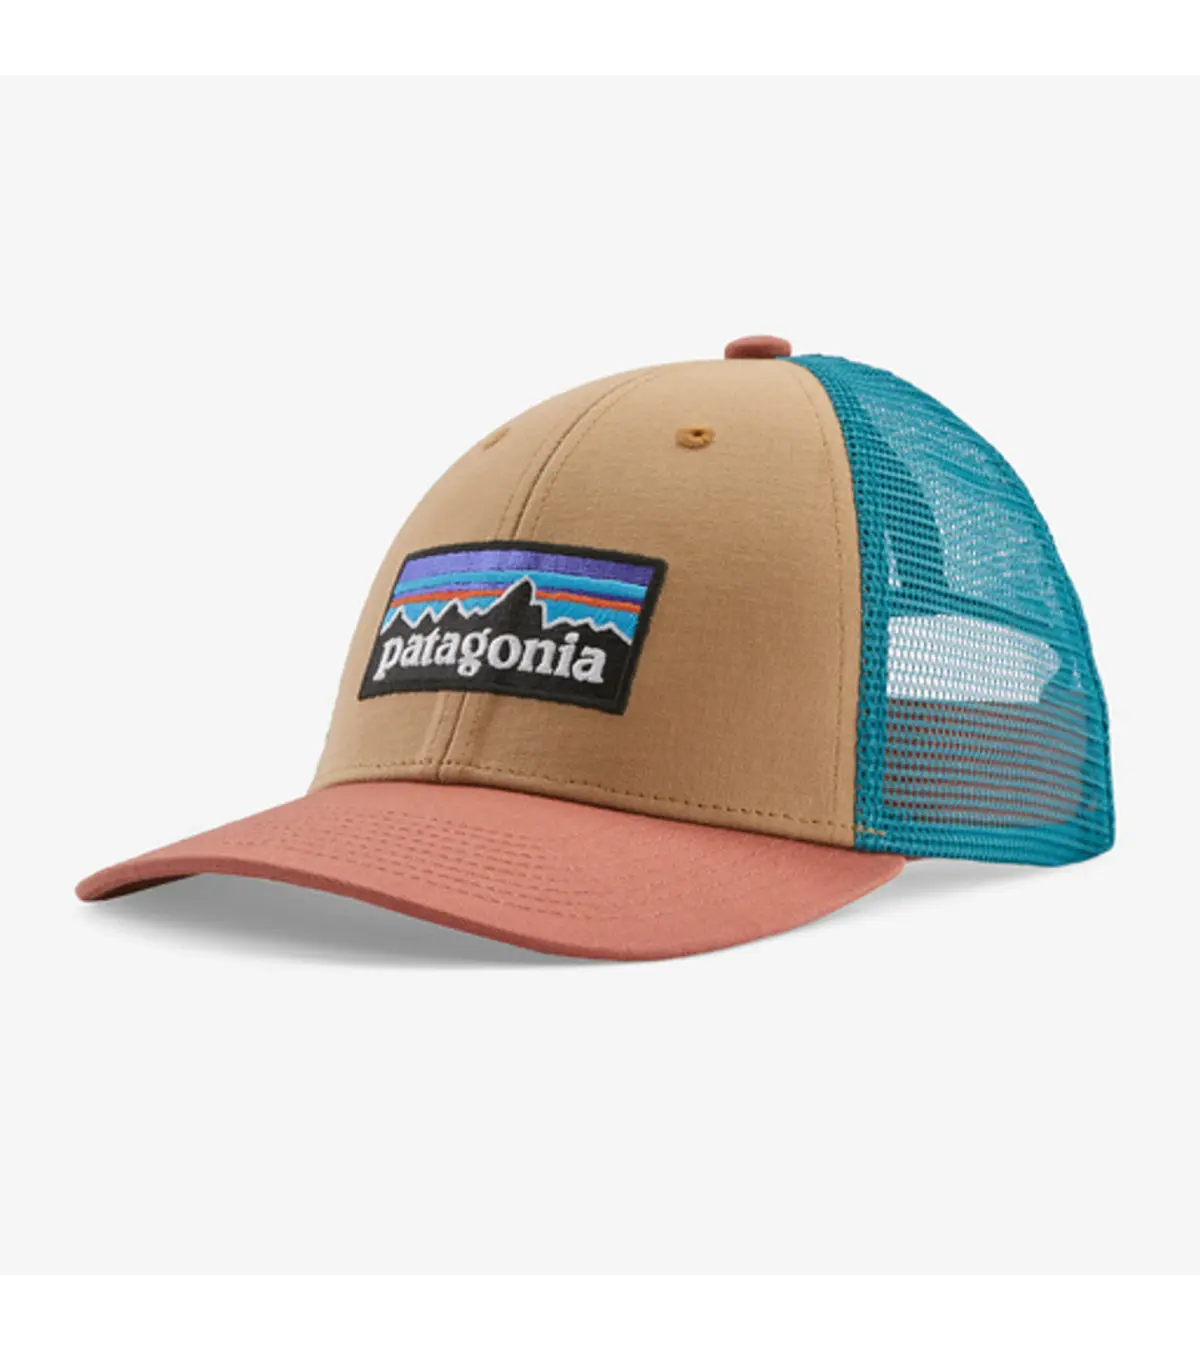 https://shopglobalpursuit.com/cdn/shop/files/patagonia-p-6-trucker-hat_4_2048x.webp?v=1706655030